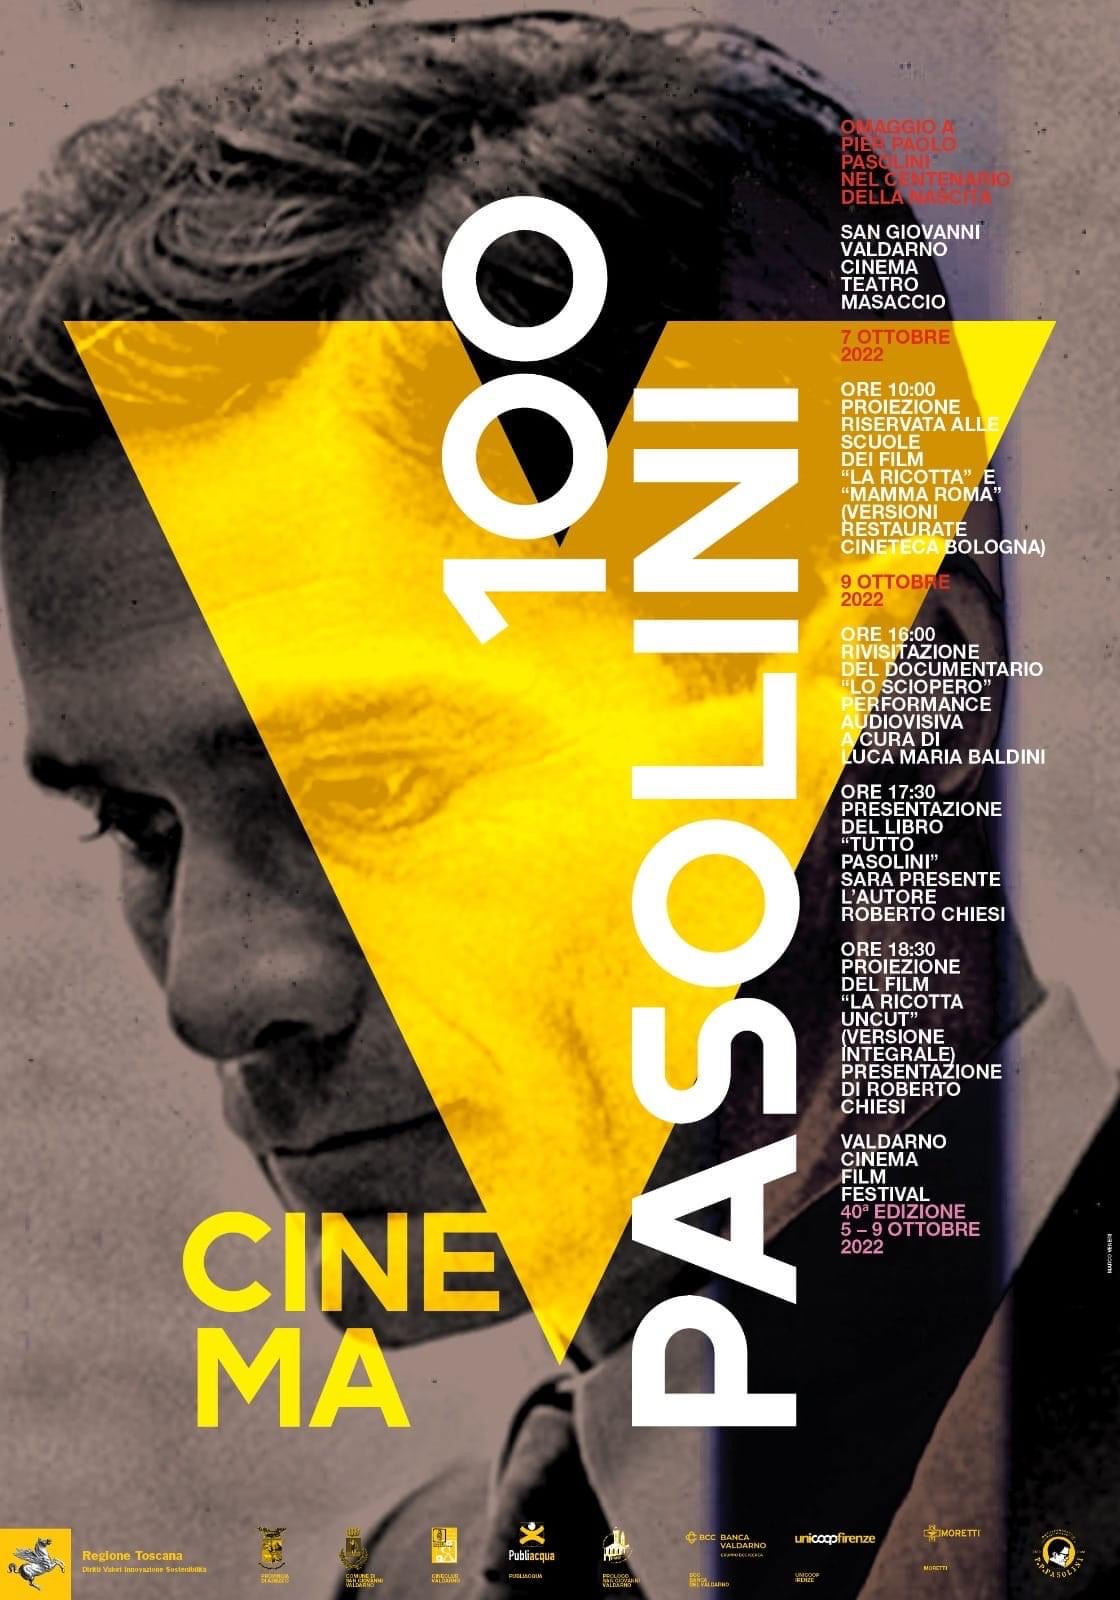 Omaggio a Pasolini nell’ultimo giorno di ValdarnoCinema Film Festival